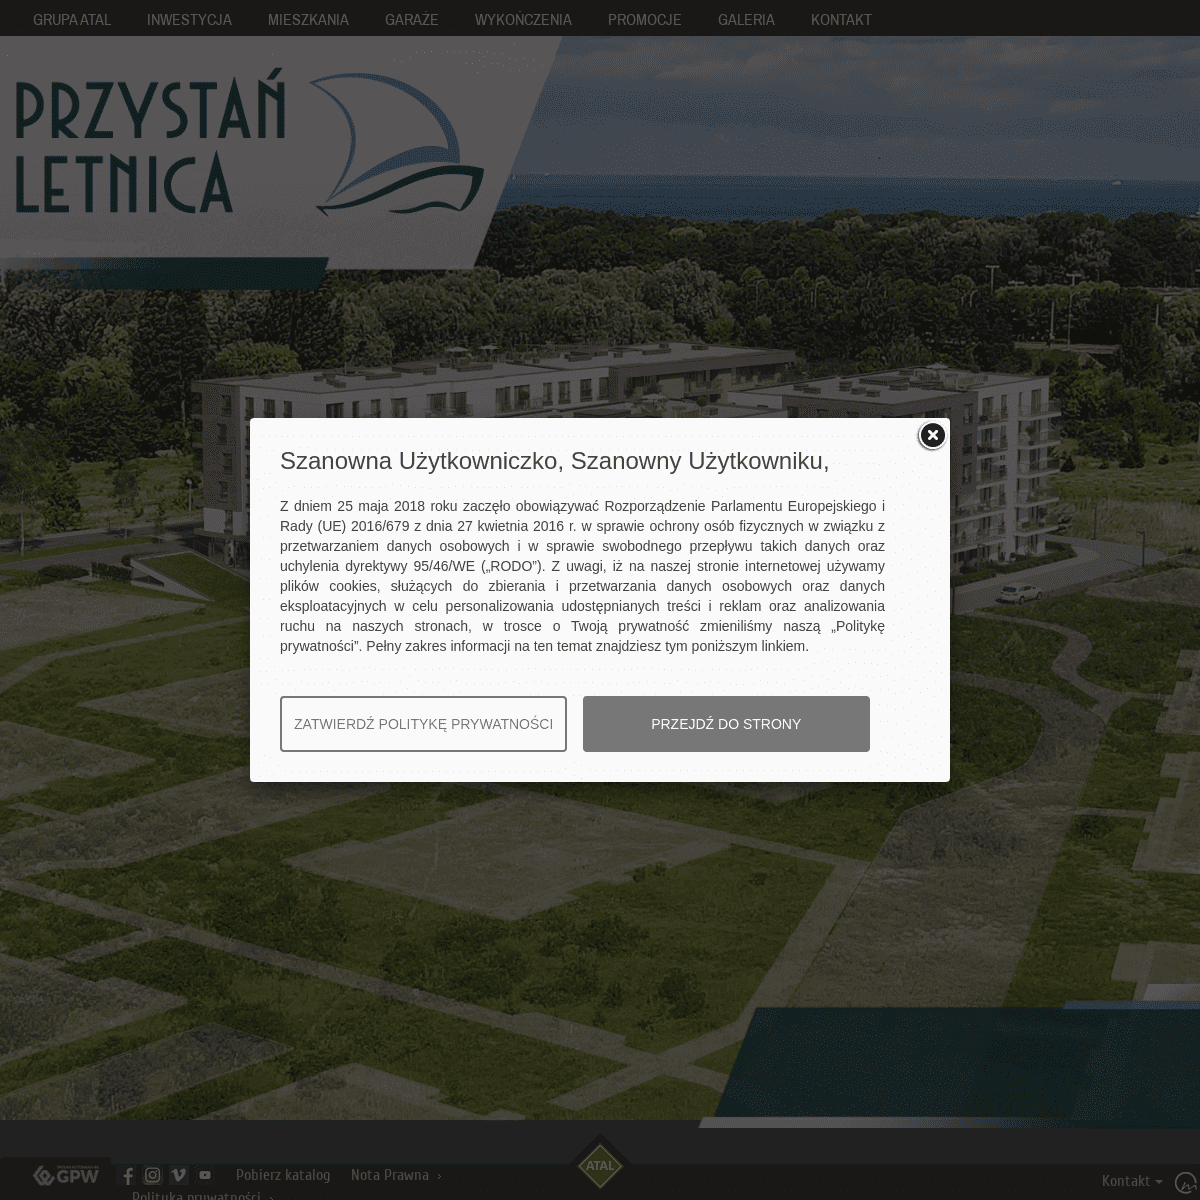 A complete backup of przystanletnica.pl